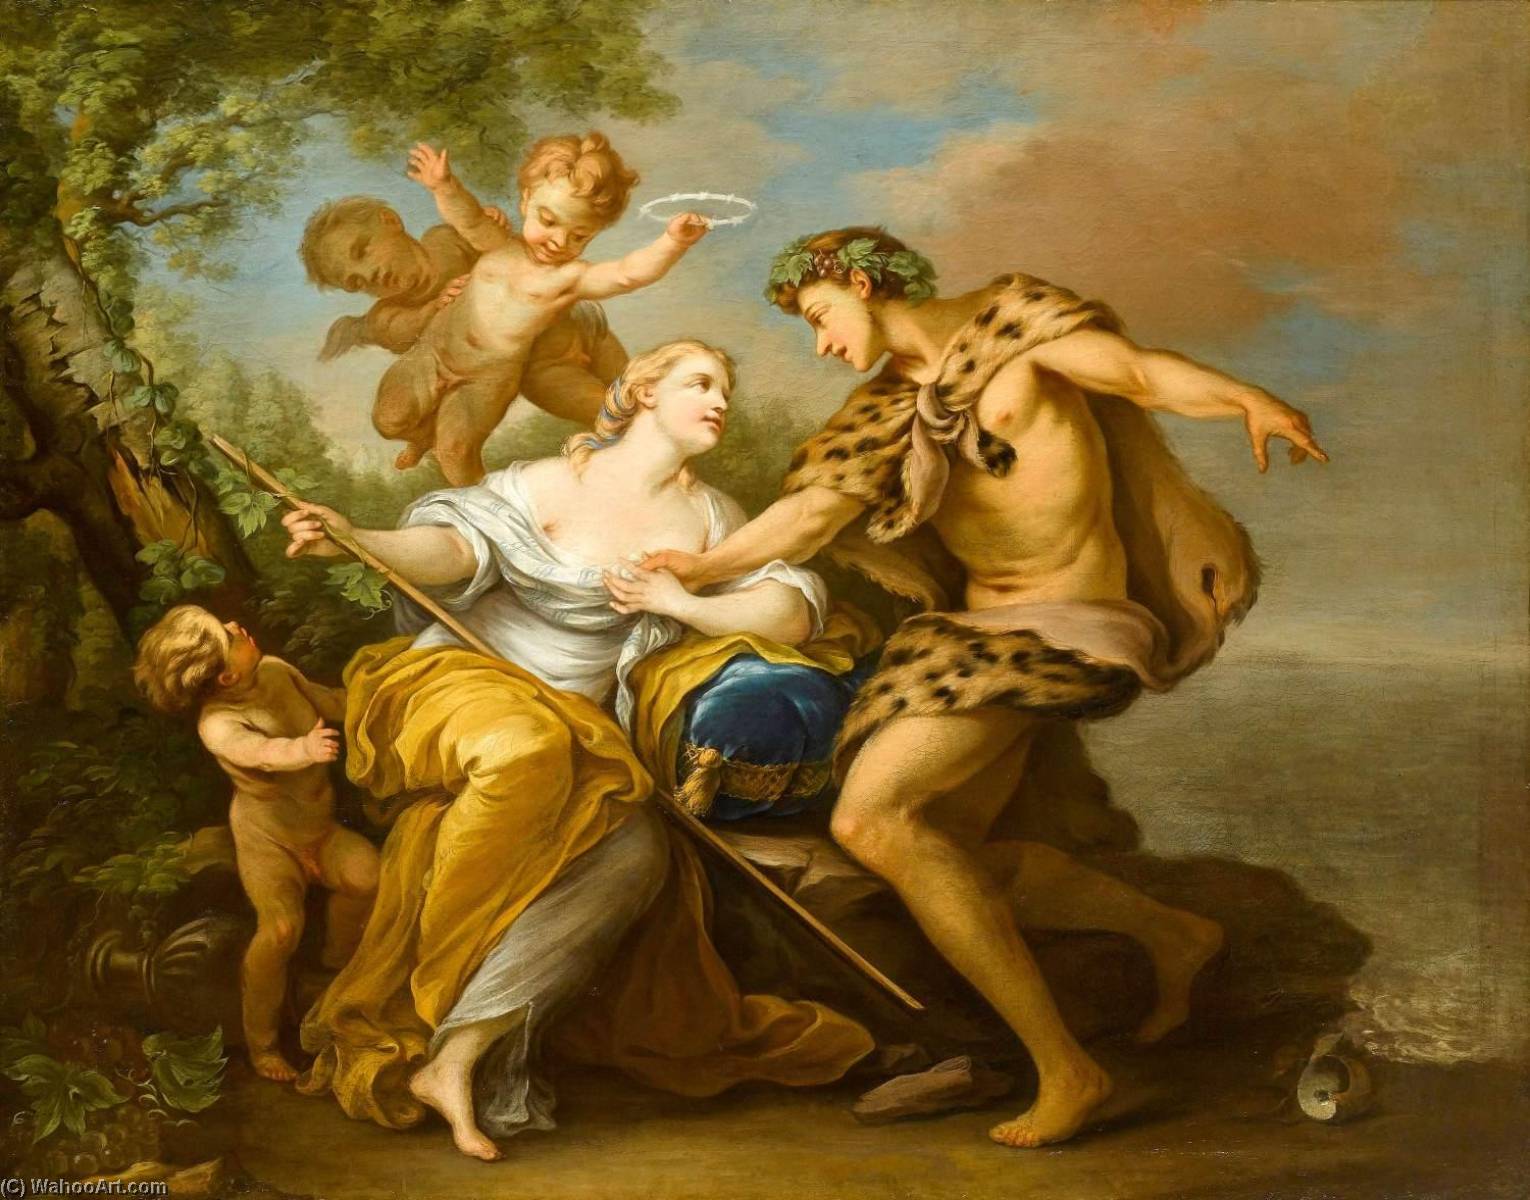 WikiOO.org - Encyclopedia of Fine Arts - Lukisan, Artwork Charles-André Van Loo (Carle Van Loo) - Bacchus and Ariadne